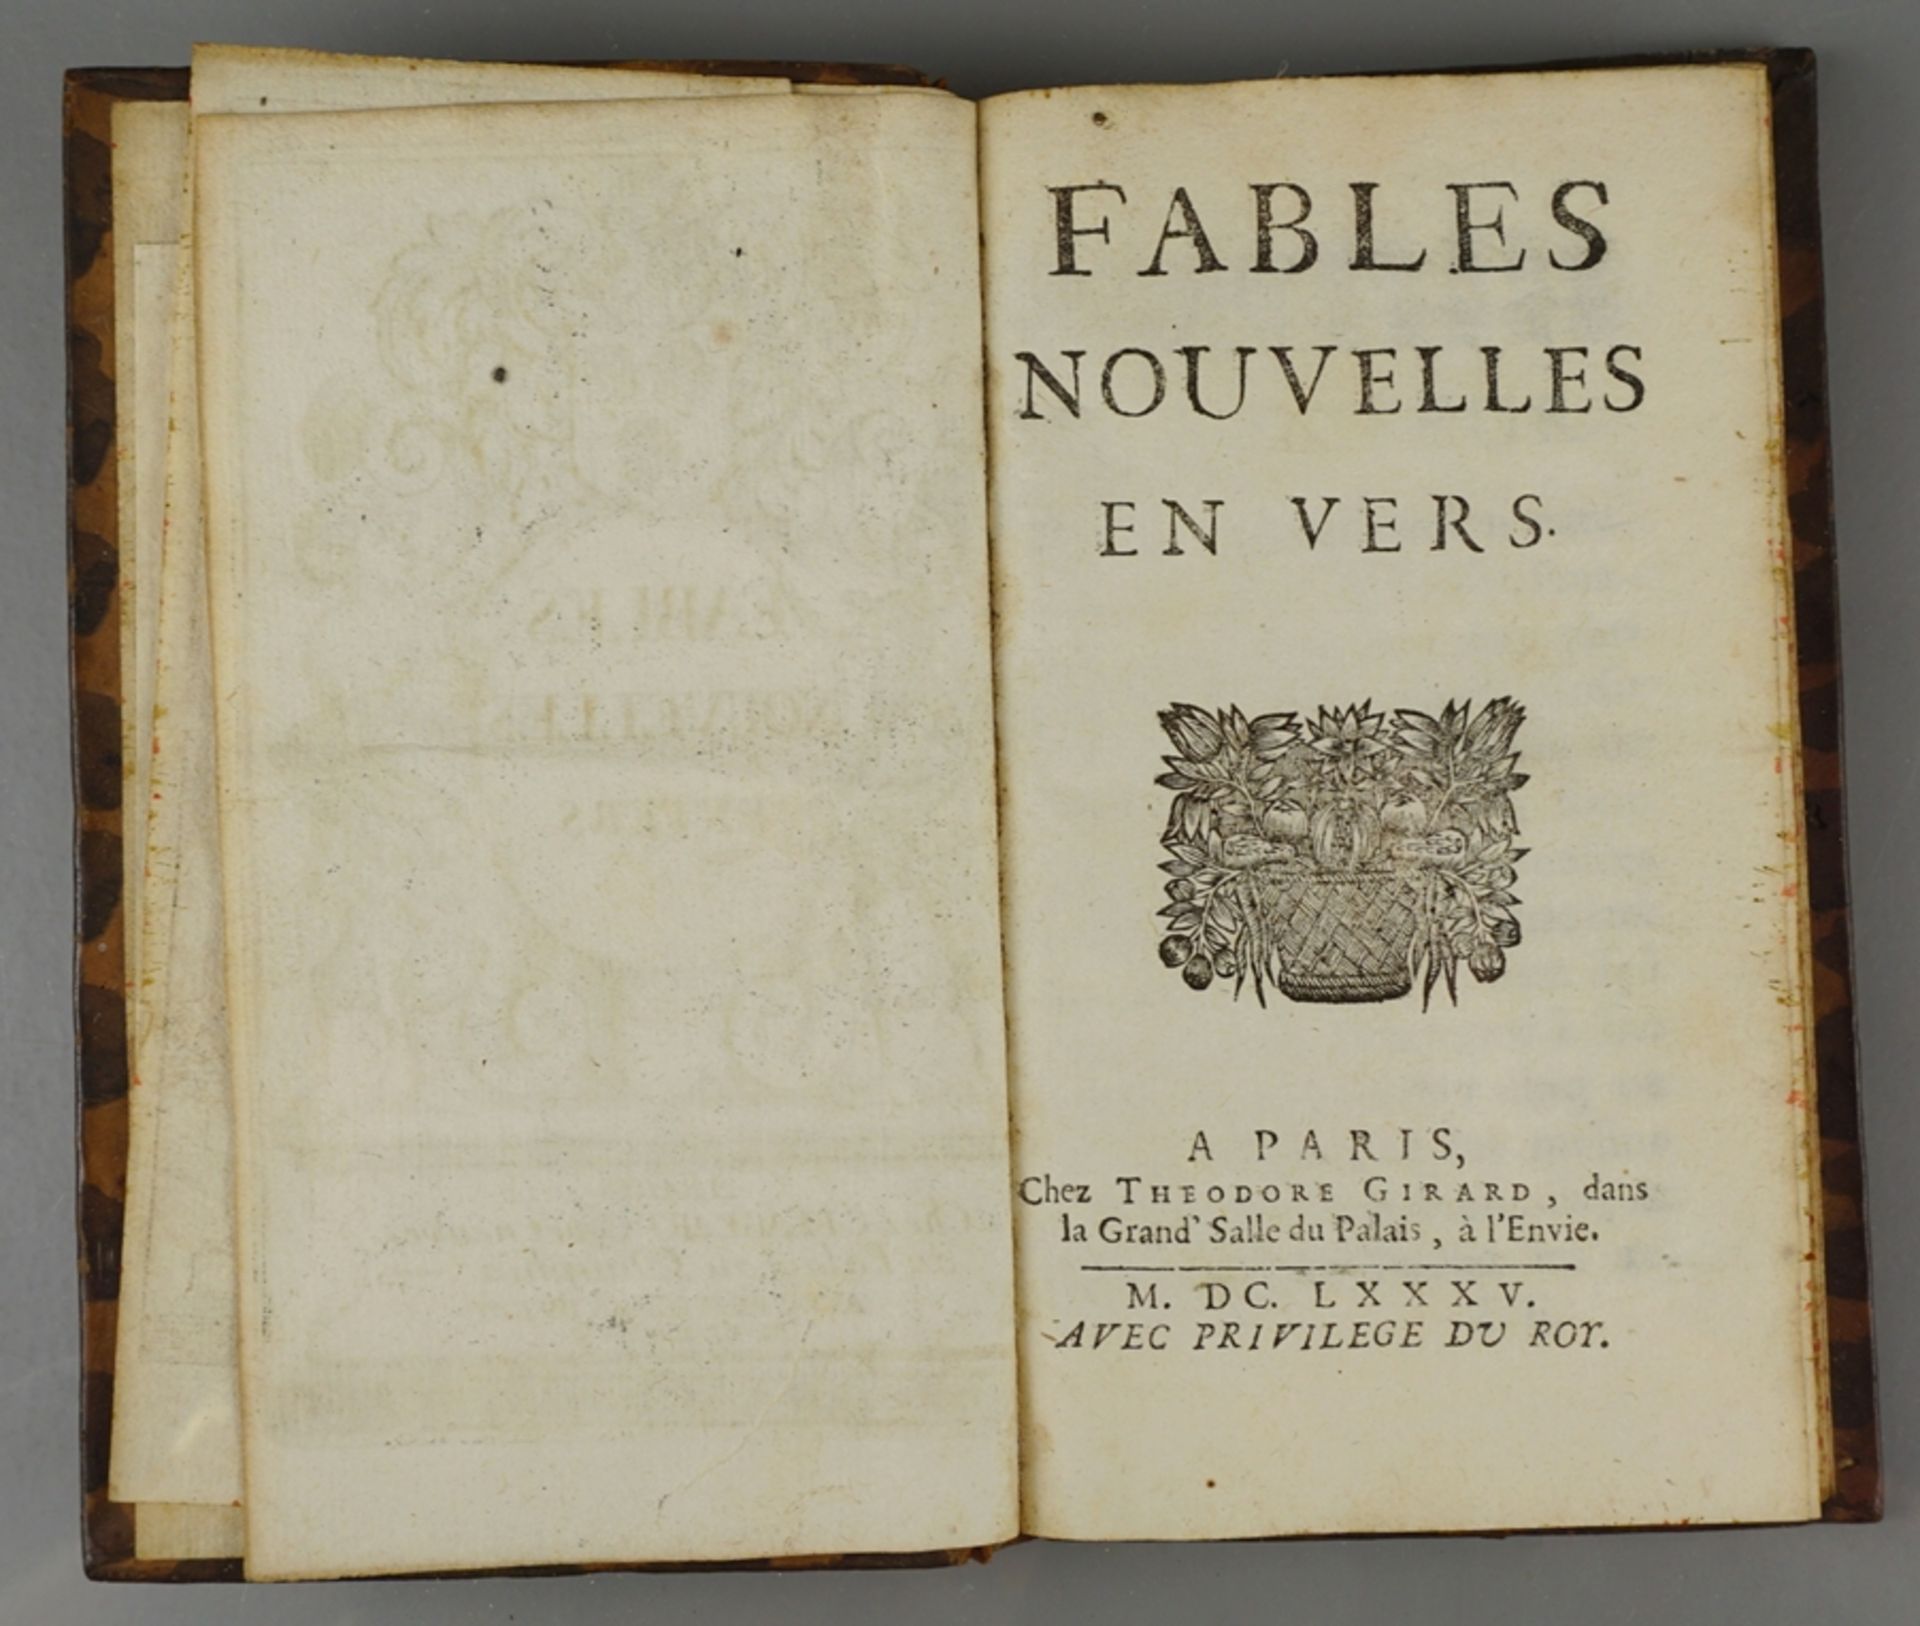 "Fables nouvelles en vers", 1685